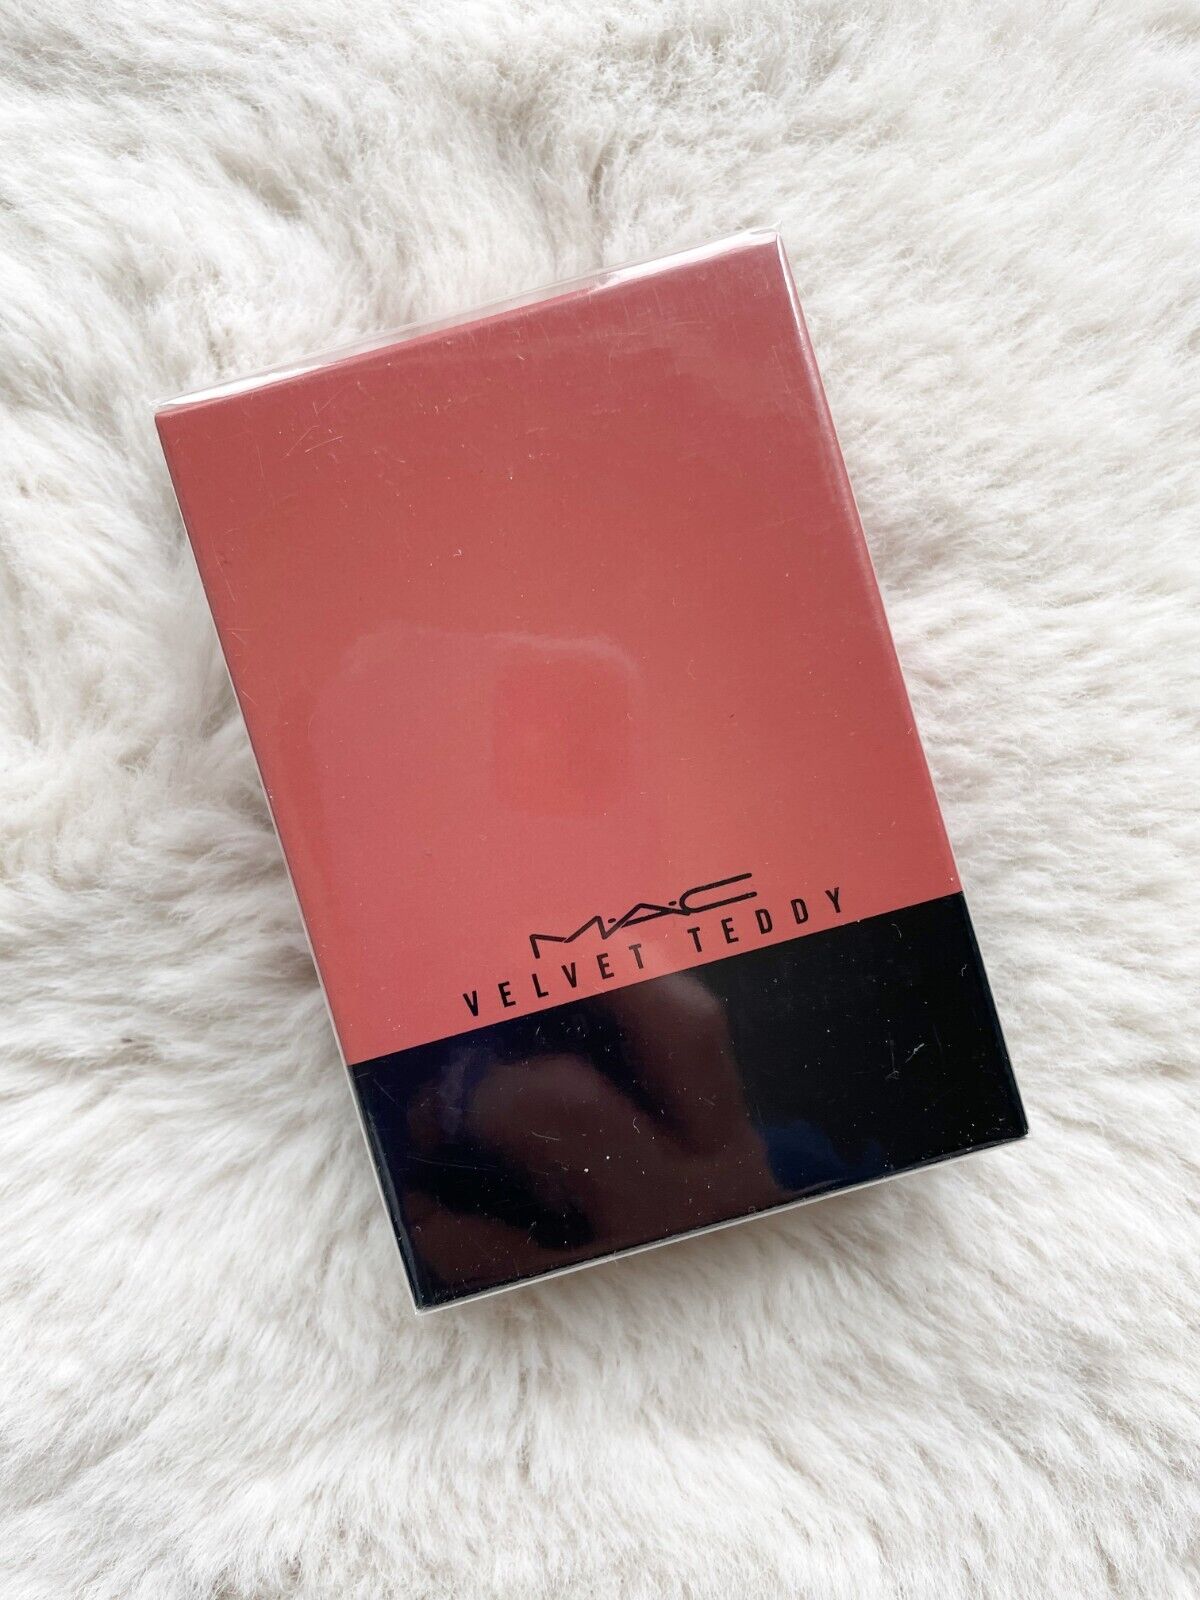 Velvet Teddy MAC perfume - a fragrância Feminino 2016